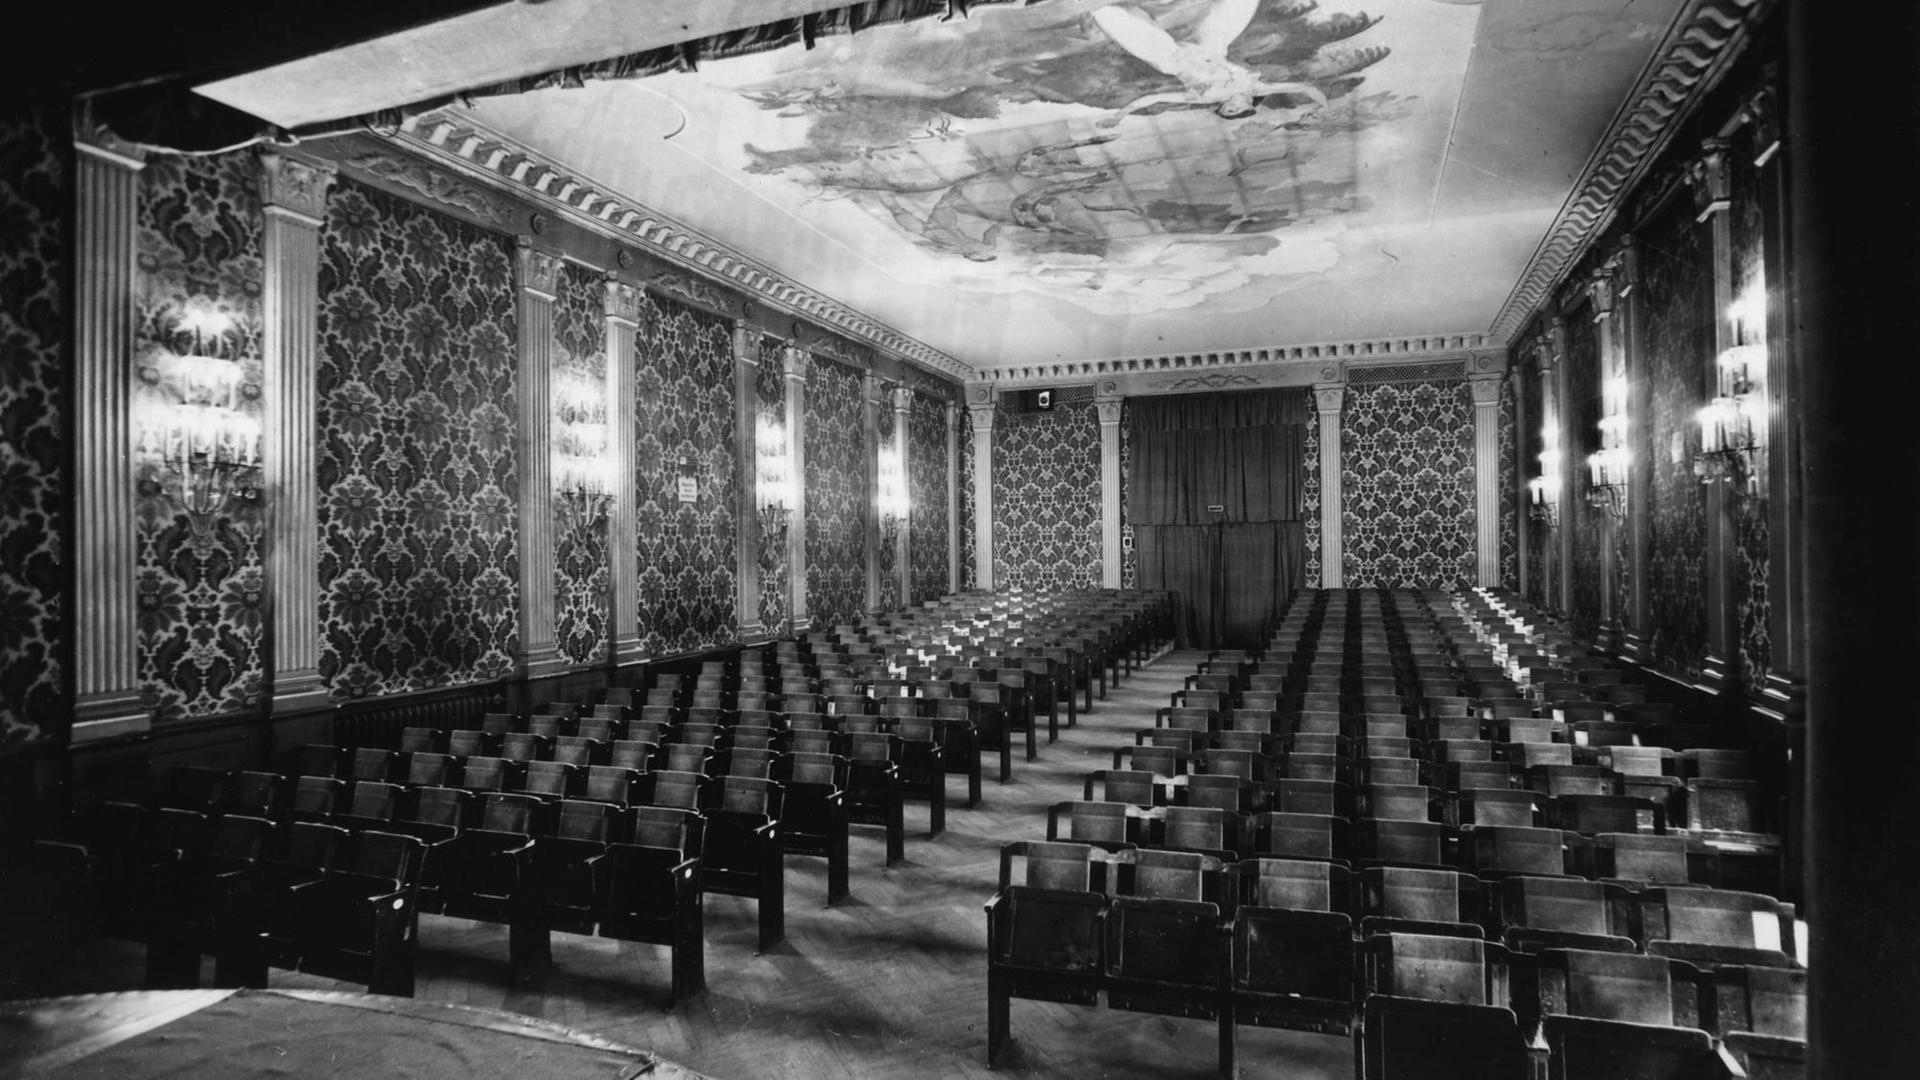 Innenansicht des von der Architektin Emilie Winkelmann gestalteten Theaters „Tribuene”.